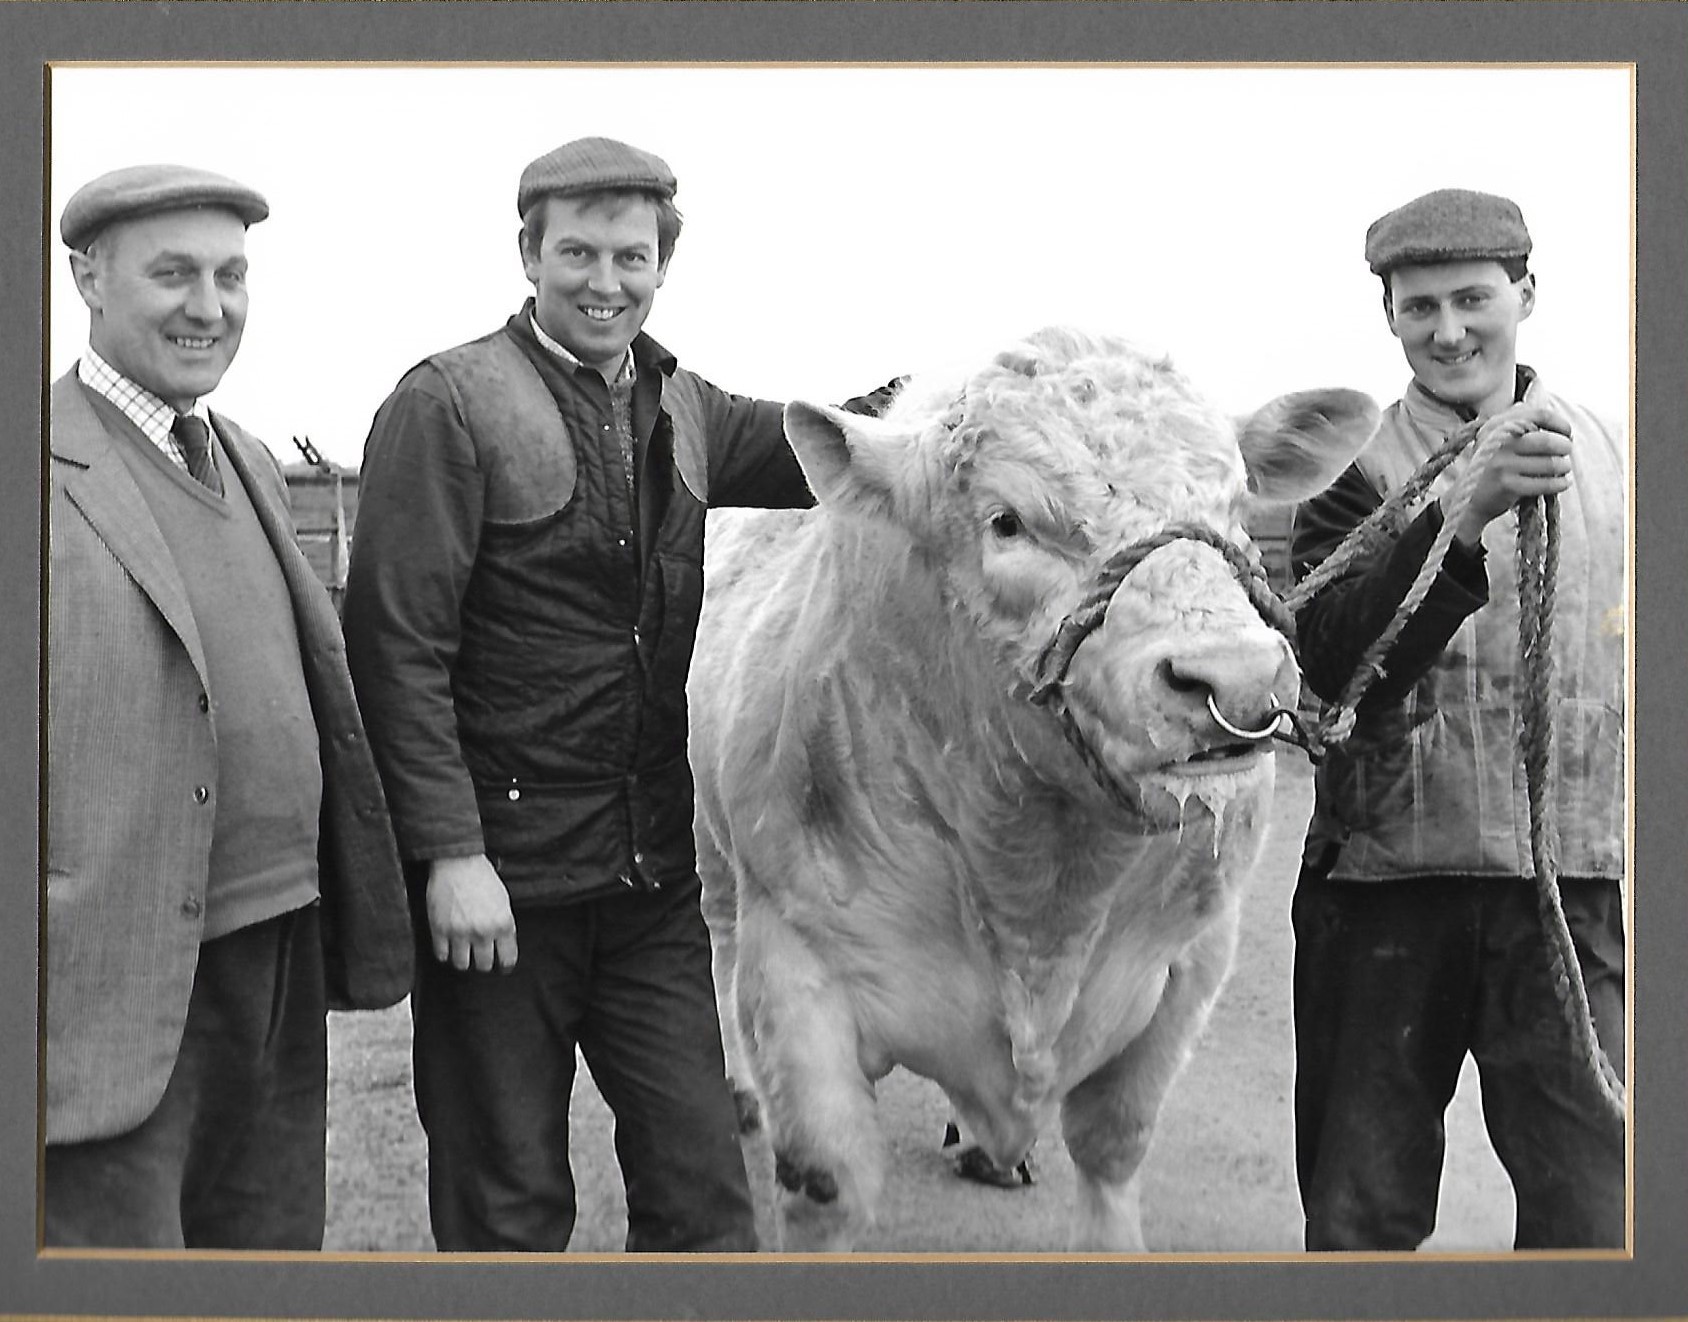 Billy Turner, David Benson and Richard Rettie at the Brampton herd